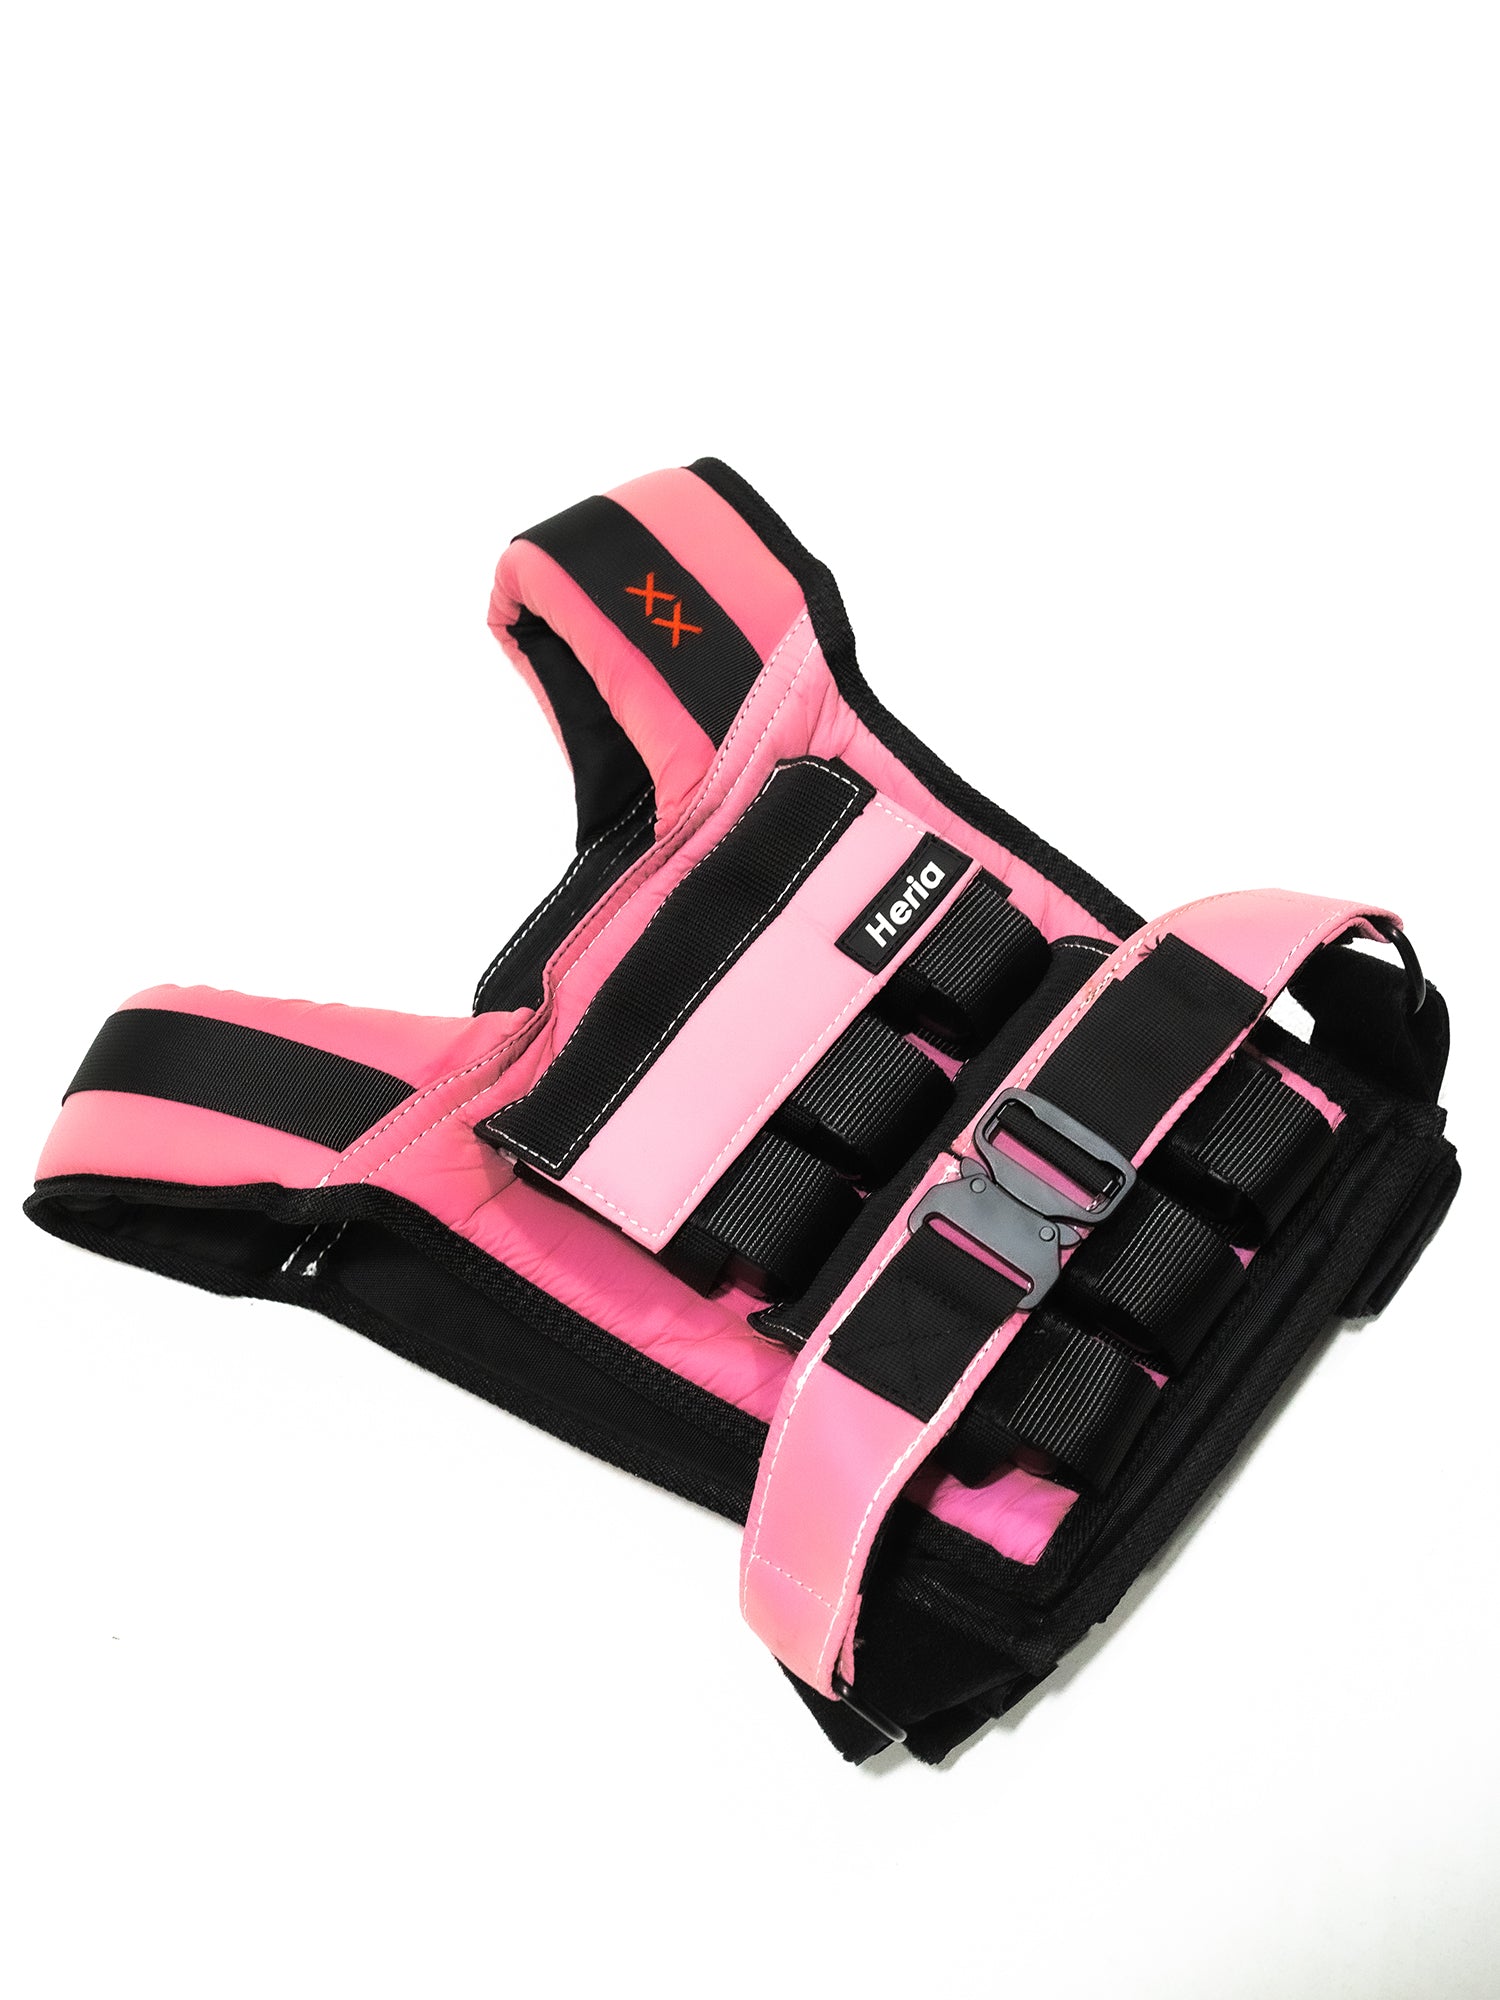 28LB Weight Vest - Pink Gradient (7063223959594)